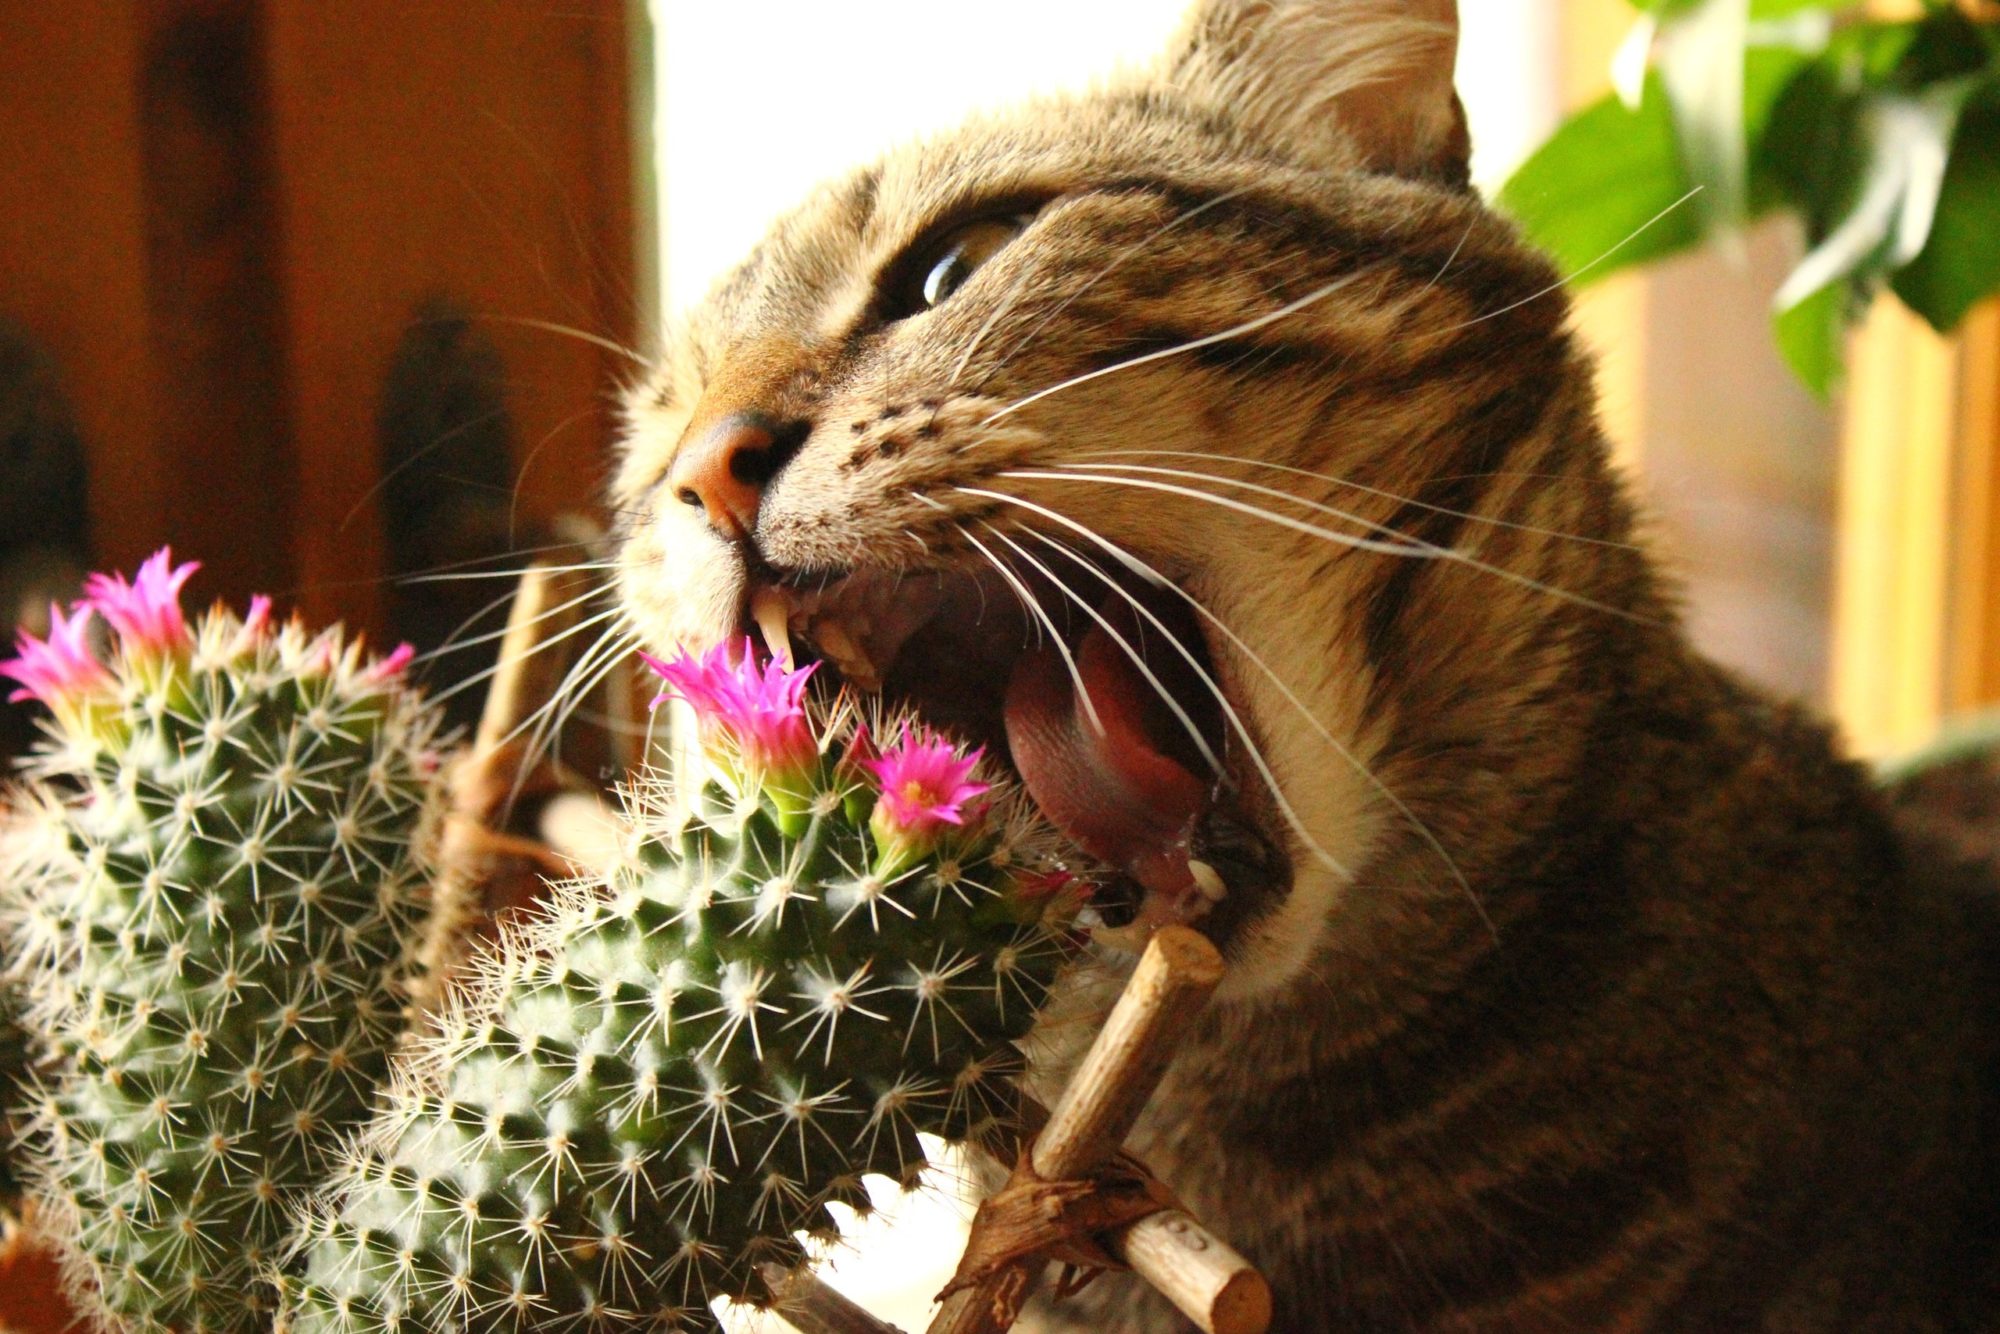 Удивительно, но кошки обожают кактусы. Сложно сказать, что именно привлекает их : вкус, наличие витаминов или оказывающее кактусом антибактериальное действие на организм. Но факт остается фактом – можете не бояться колючих растений и заводить кактус вместе с животным.